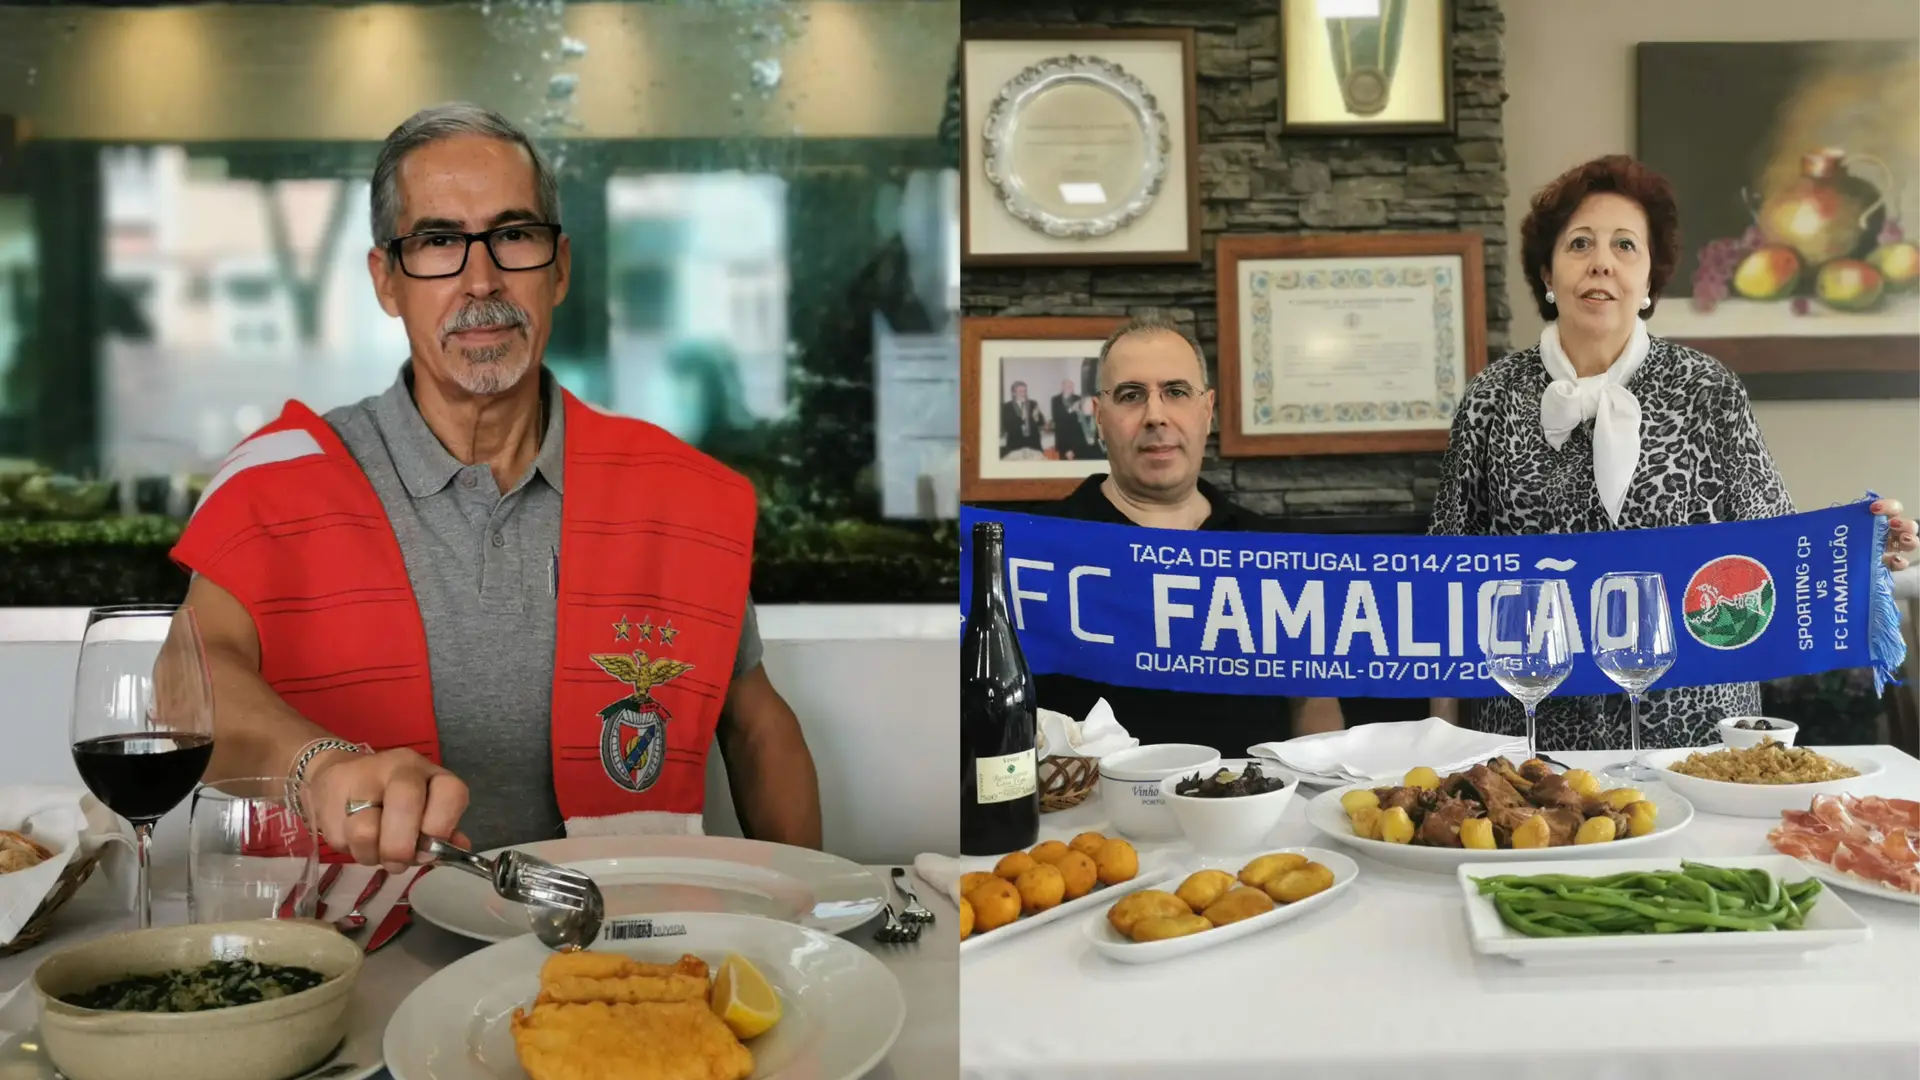 Benfica vs Famalicão: Filetes de pescada com arroz de grelos ou Cabrito assado no forno?